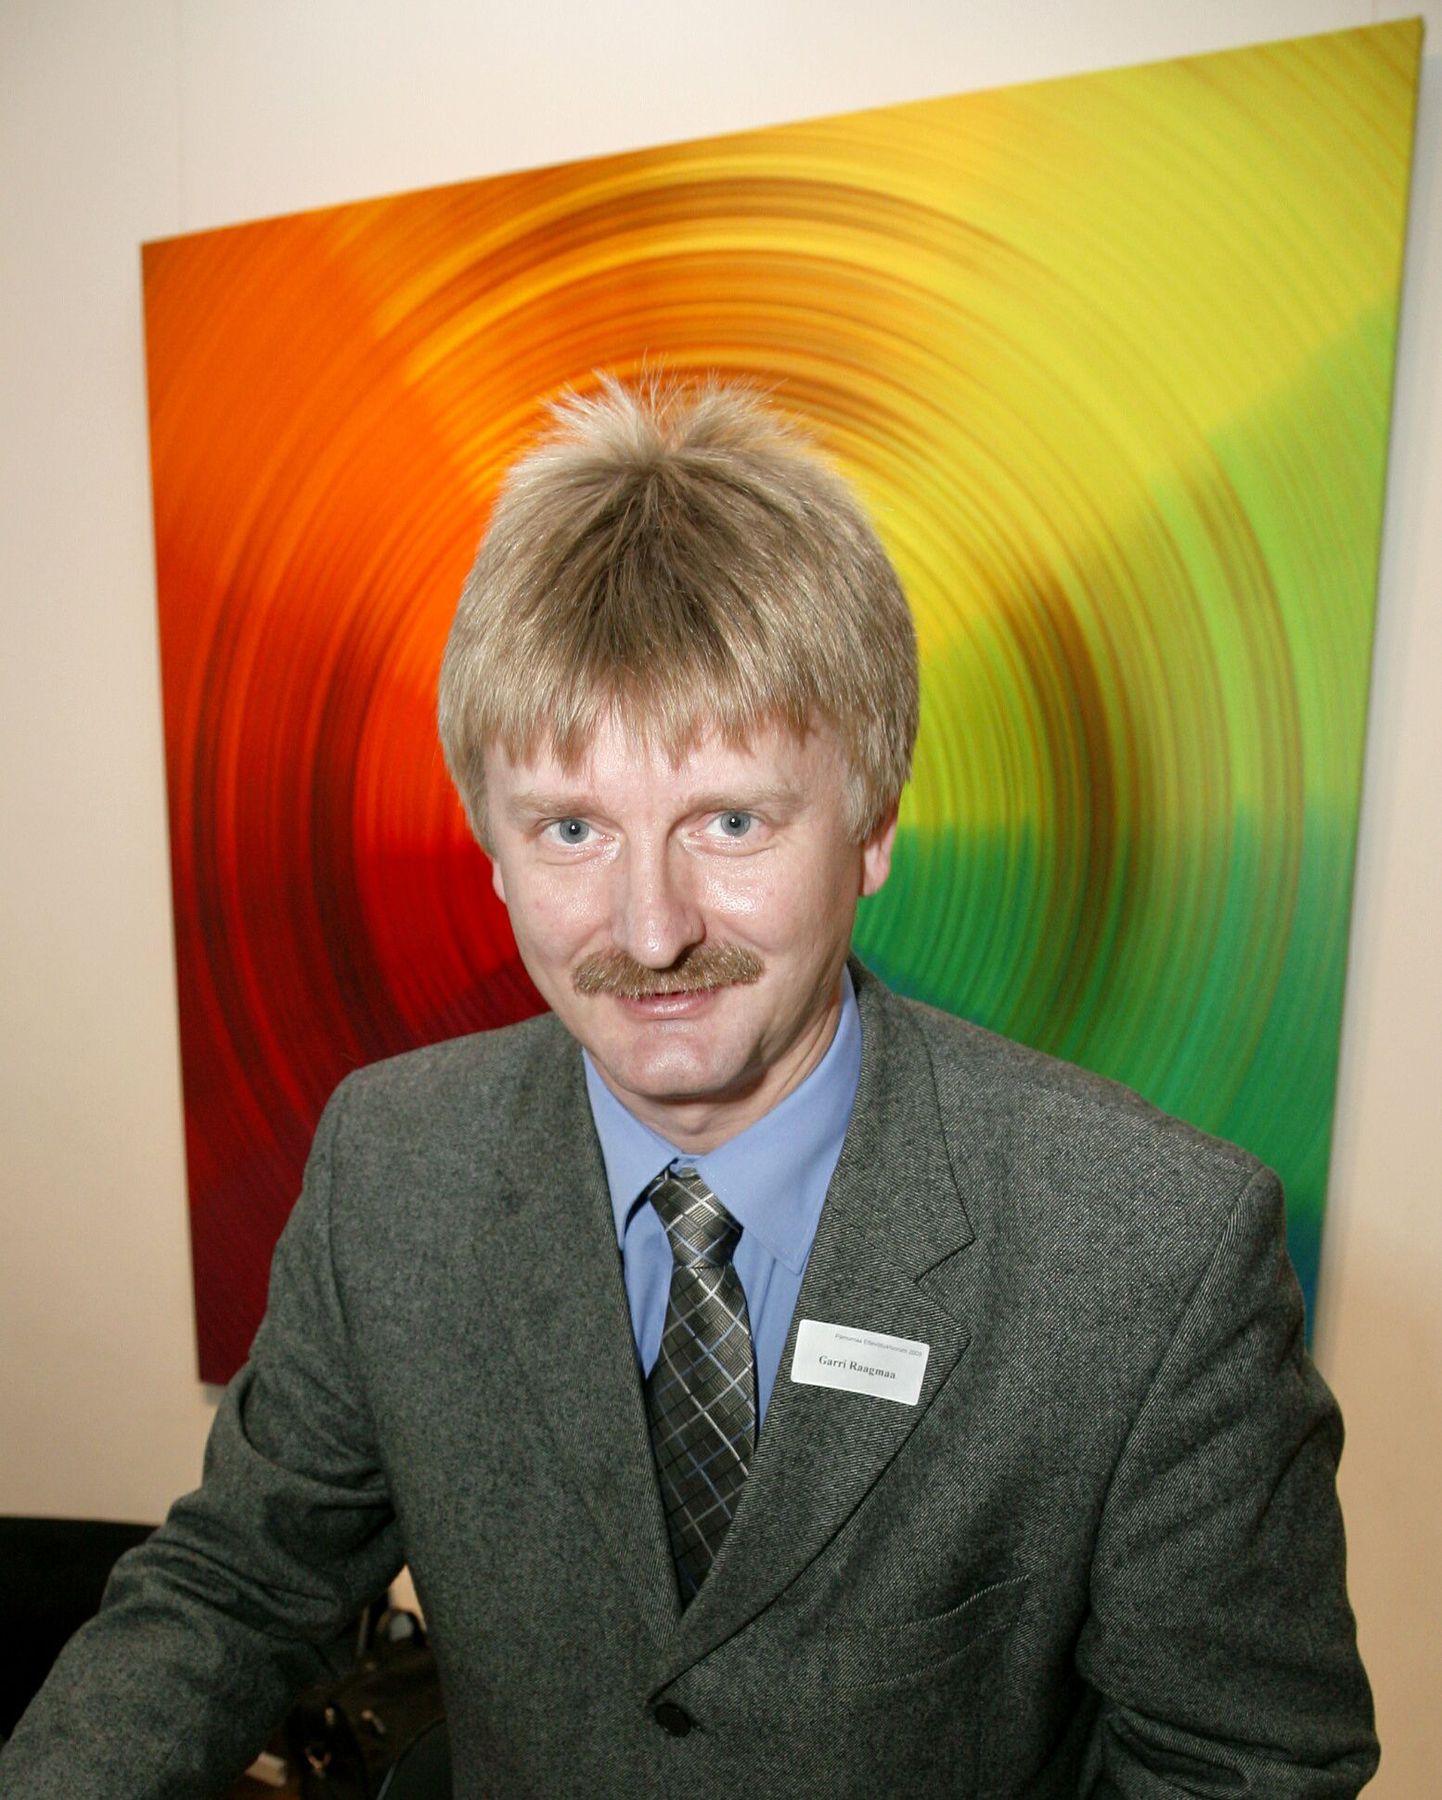 Garri Raagmaa, Tartu ülikooli teadur, 2009. aasta esimesel poolel oli ametis Tartu ülikooli Pärnu kolledži direktorina, “Pärnu aasta mees 2009”.